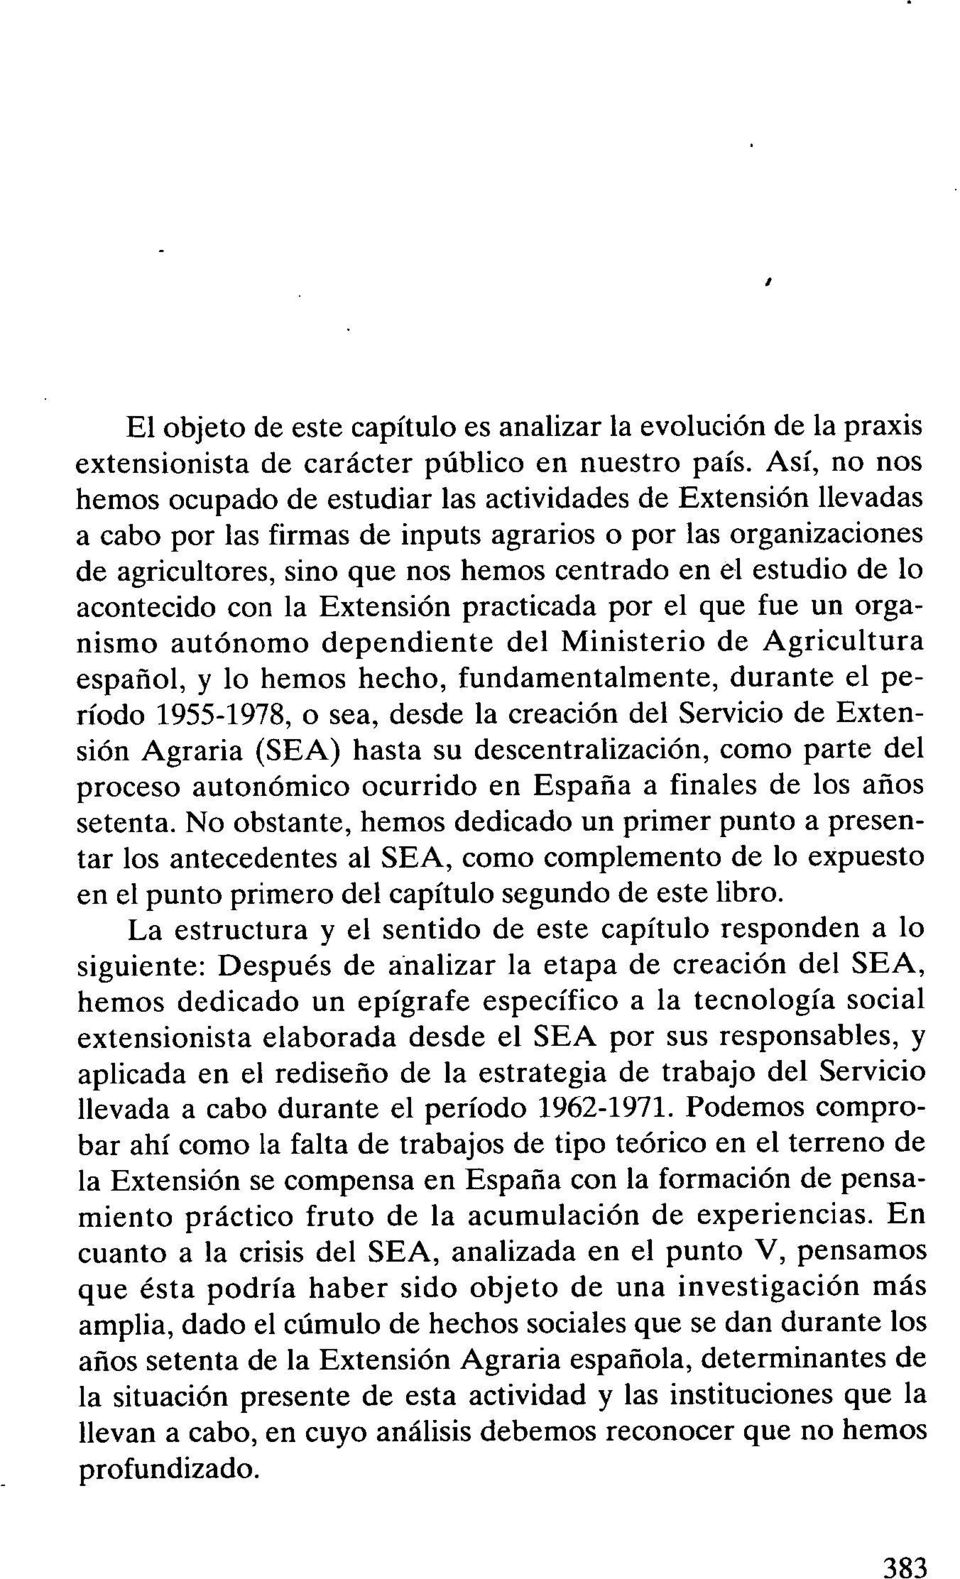 estudio de lo acontecido con la Extensión practicada por el que fue un organismo autónomo dependiente del Ministerio de Agricultura español, y lo hemos hecho, fundamentalmente, durante el período